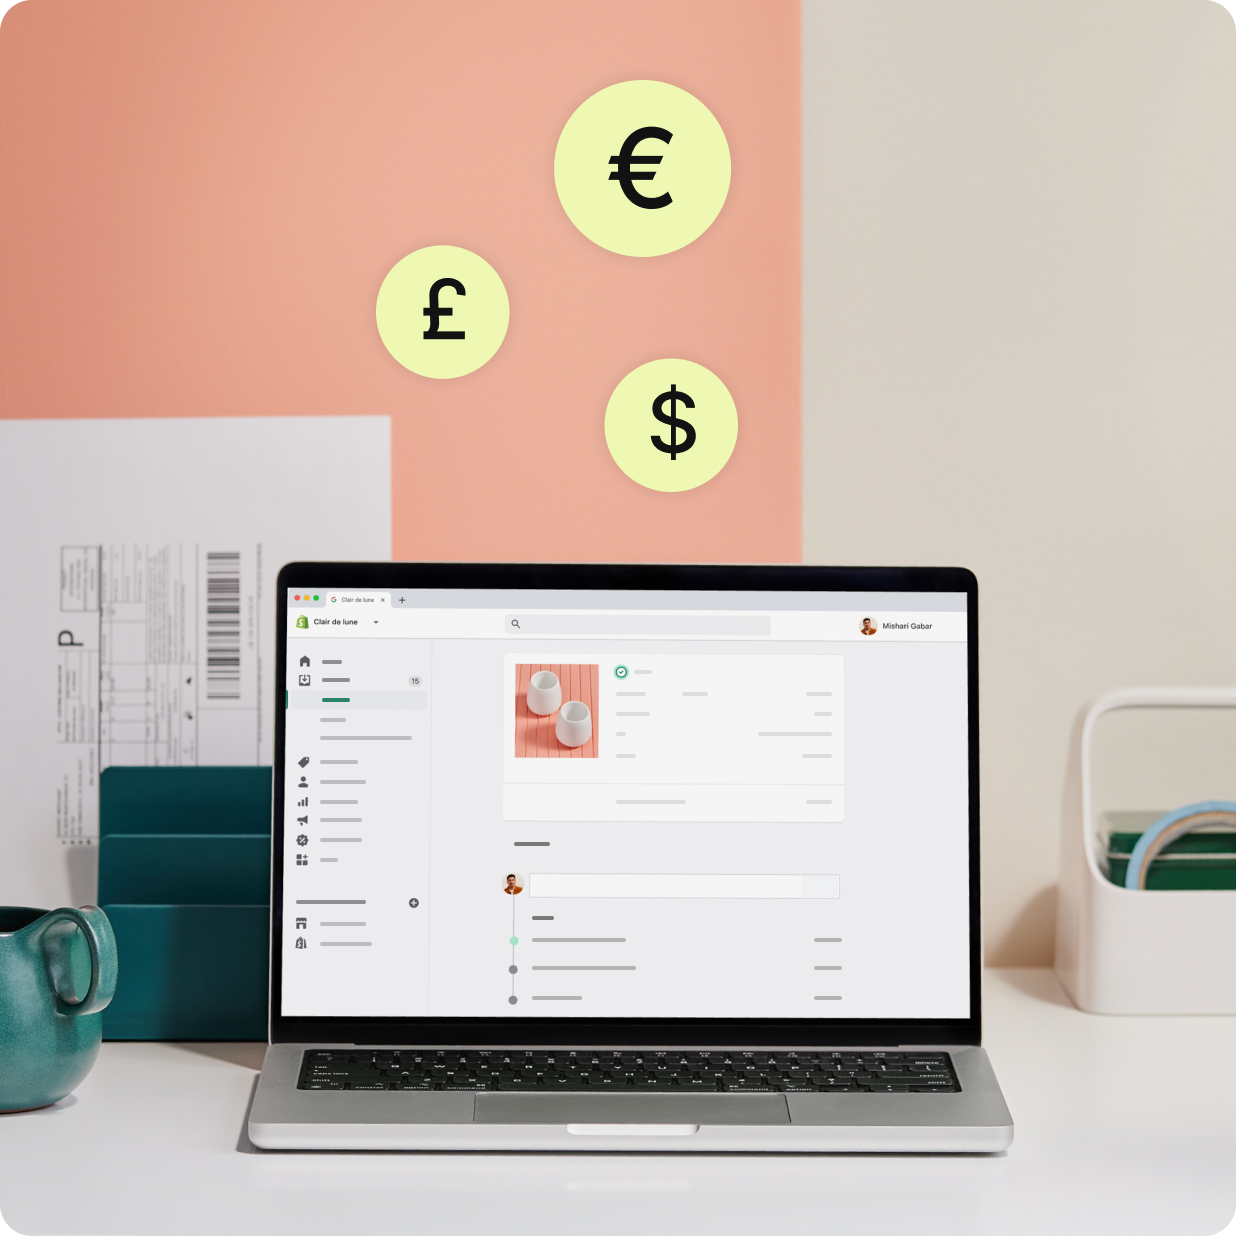 笔记本电脑显示带有多种货币符号的 Shopify Payments 订单和发票